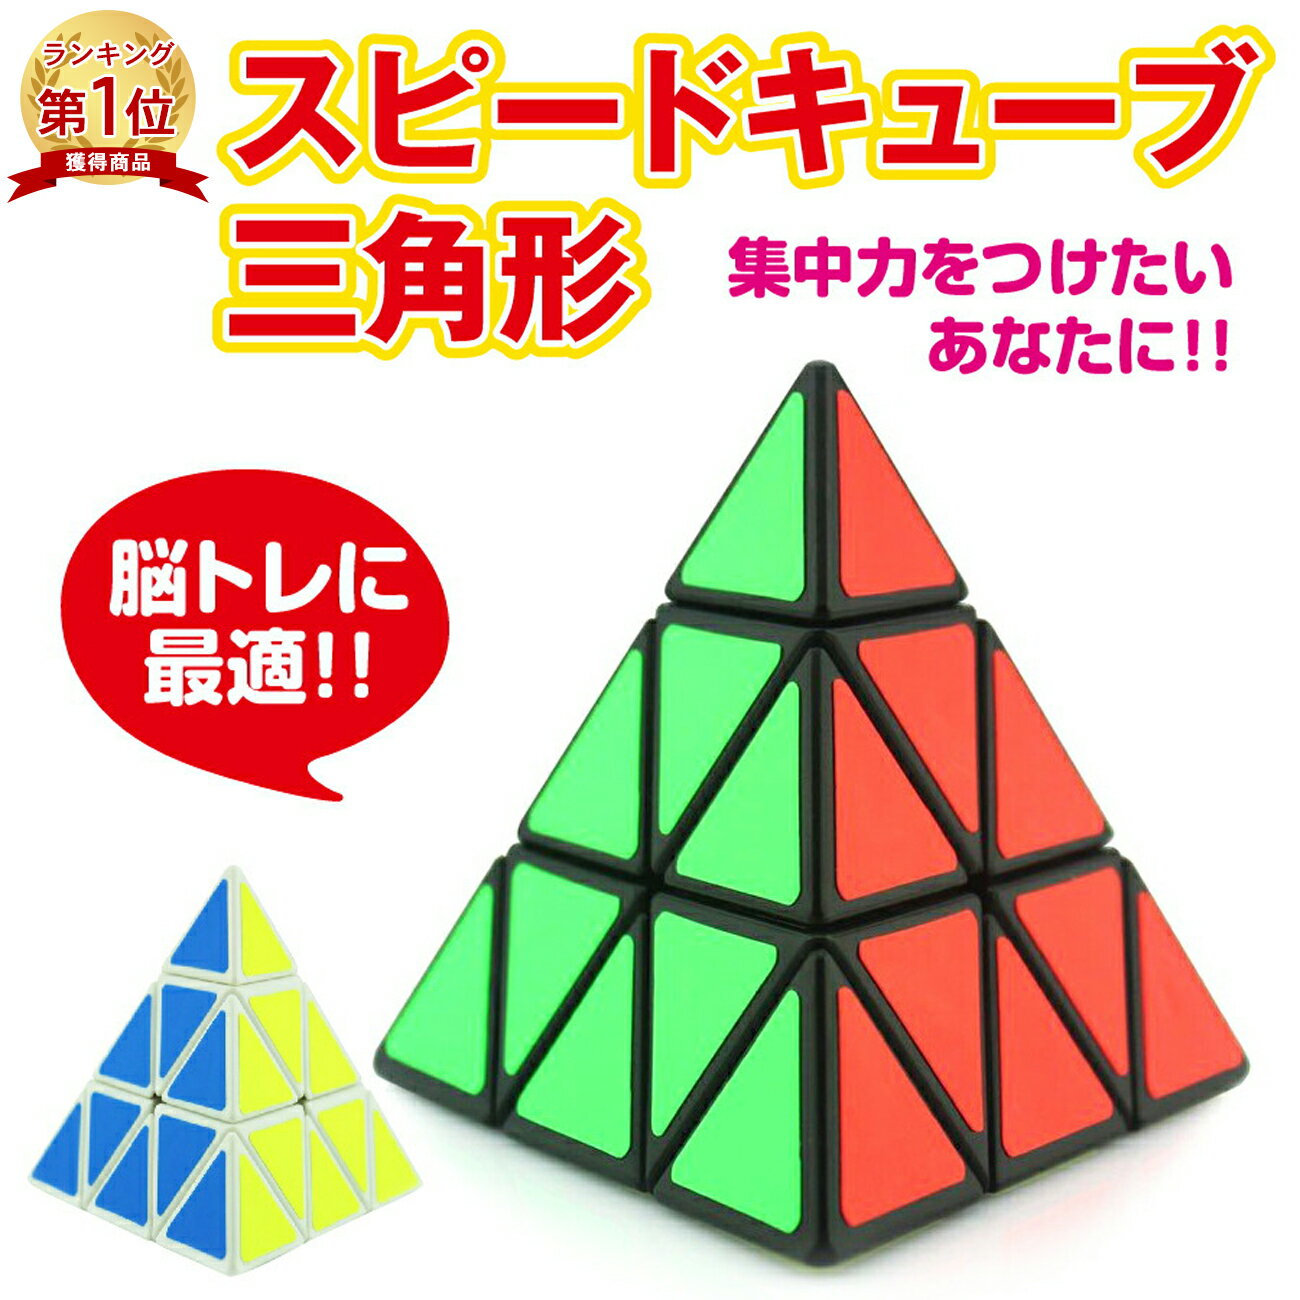 ピラミンクス スピードキューブ 三角形 ピラミッド型